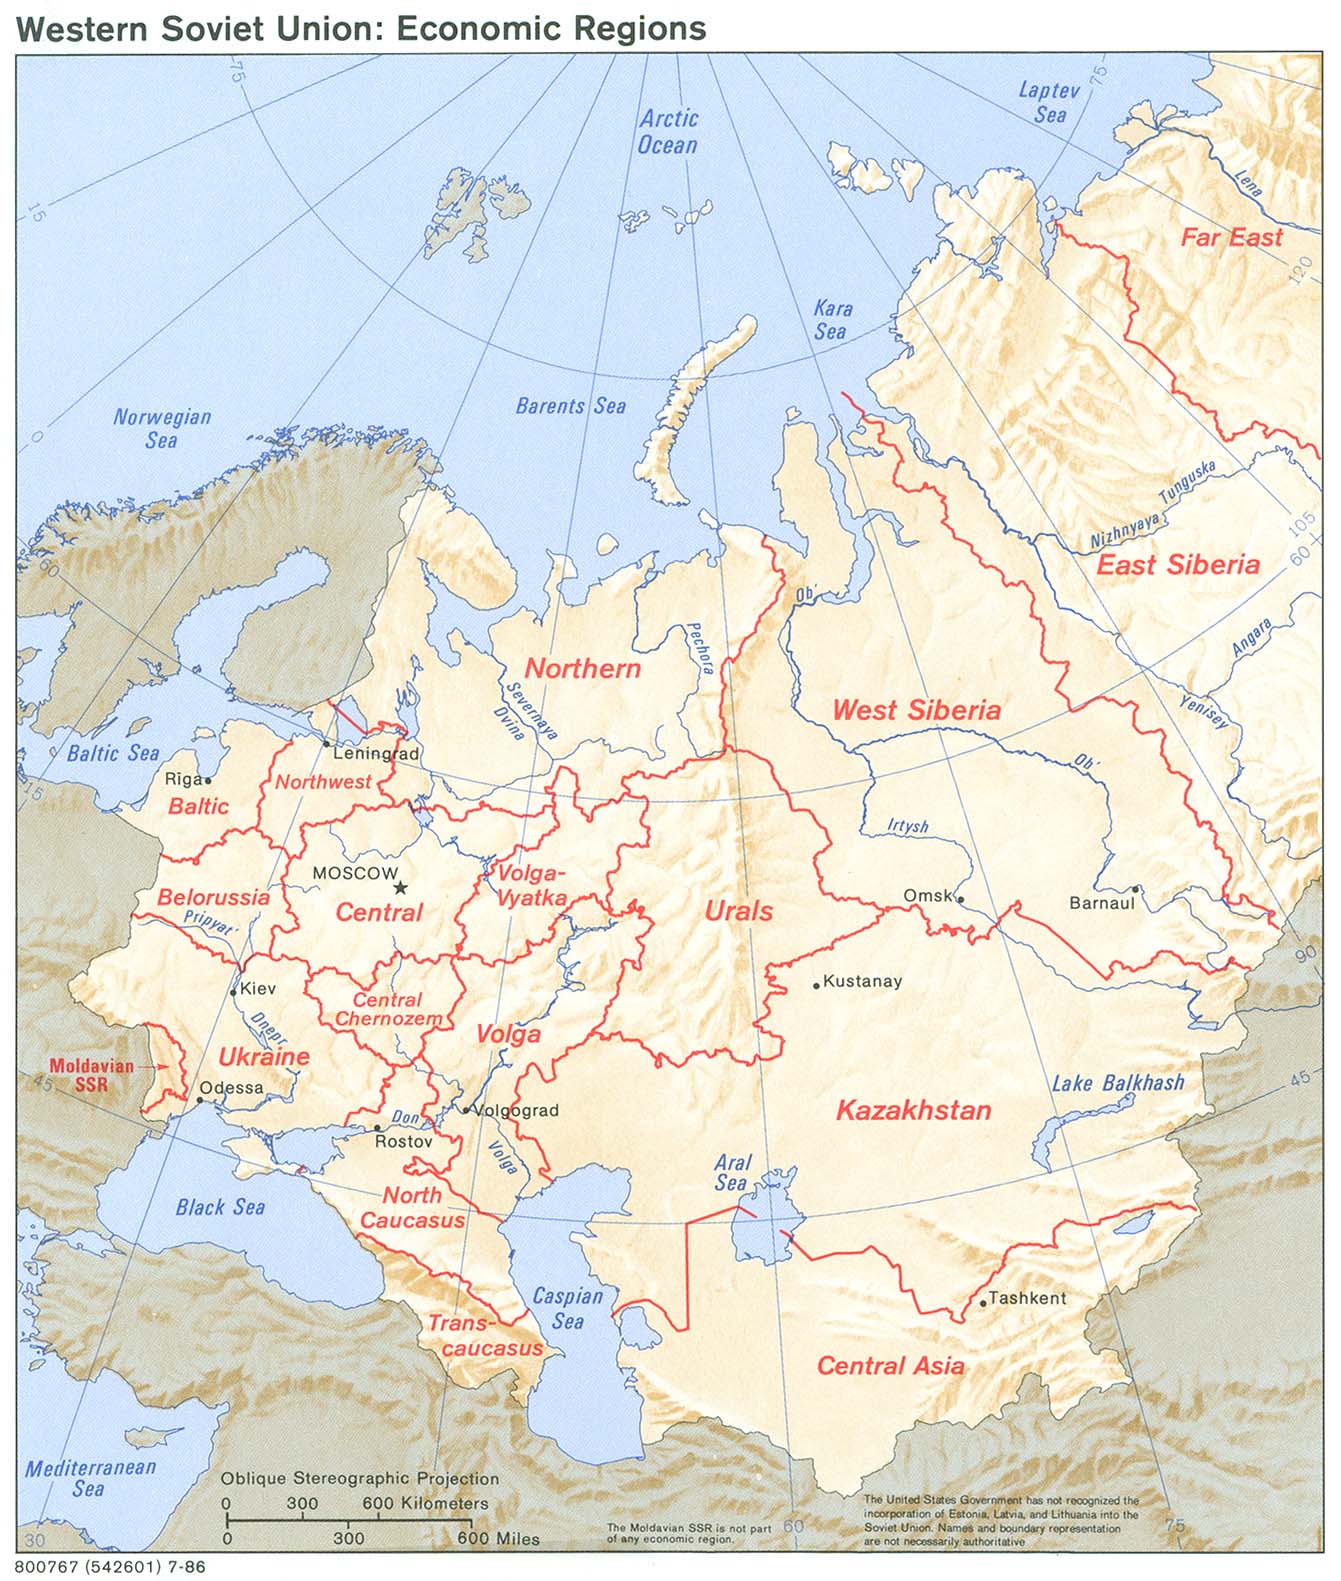 Mapa de las Regiones Económica Occidentales en la ex Unión Soviética